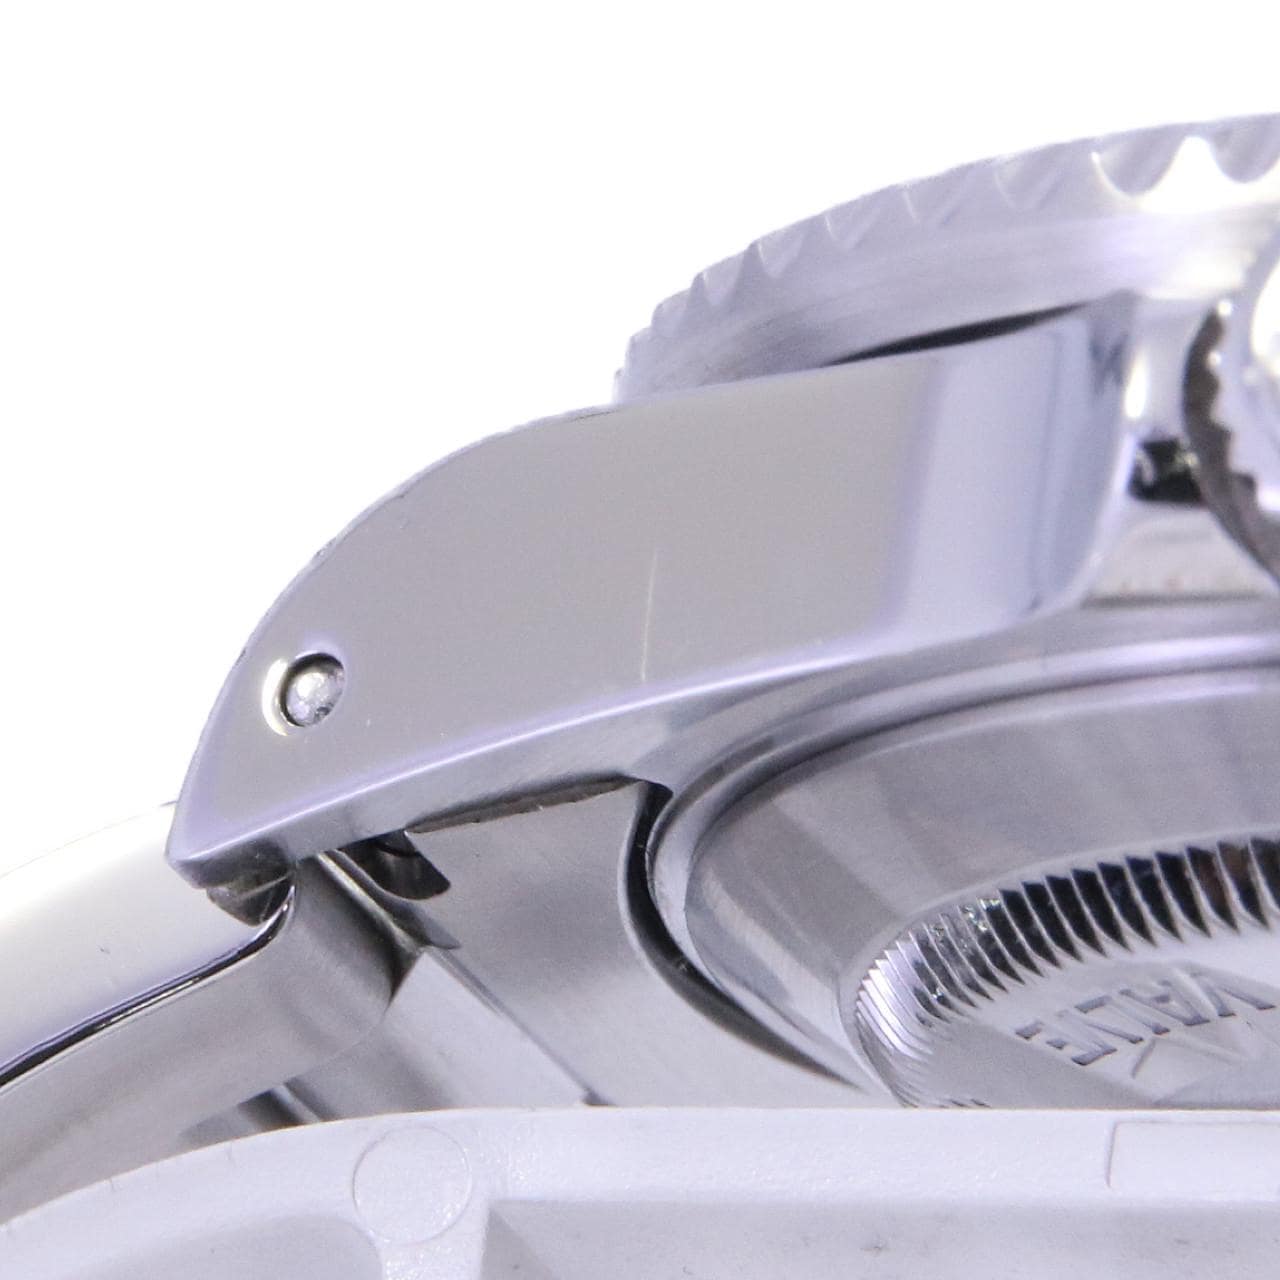 ロレックス シードゥエラー 自動巻き 腕時計 ステンレススチール SS ブラック Z番(2006年) 2007年7月購入 16600 メンズ 40802053458【アラモード】